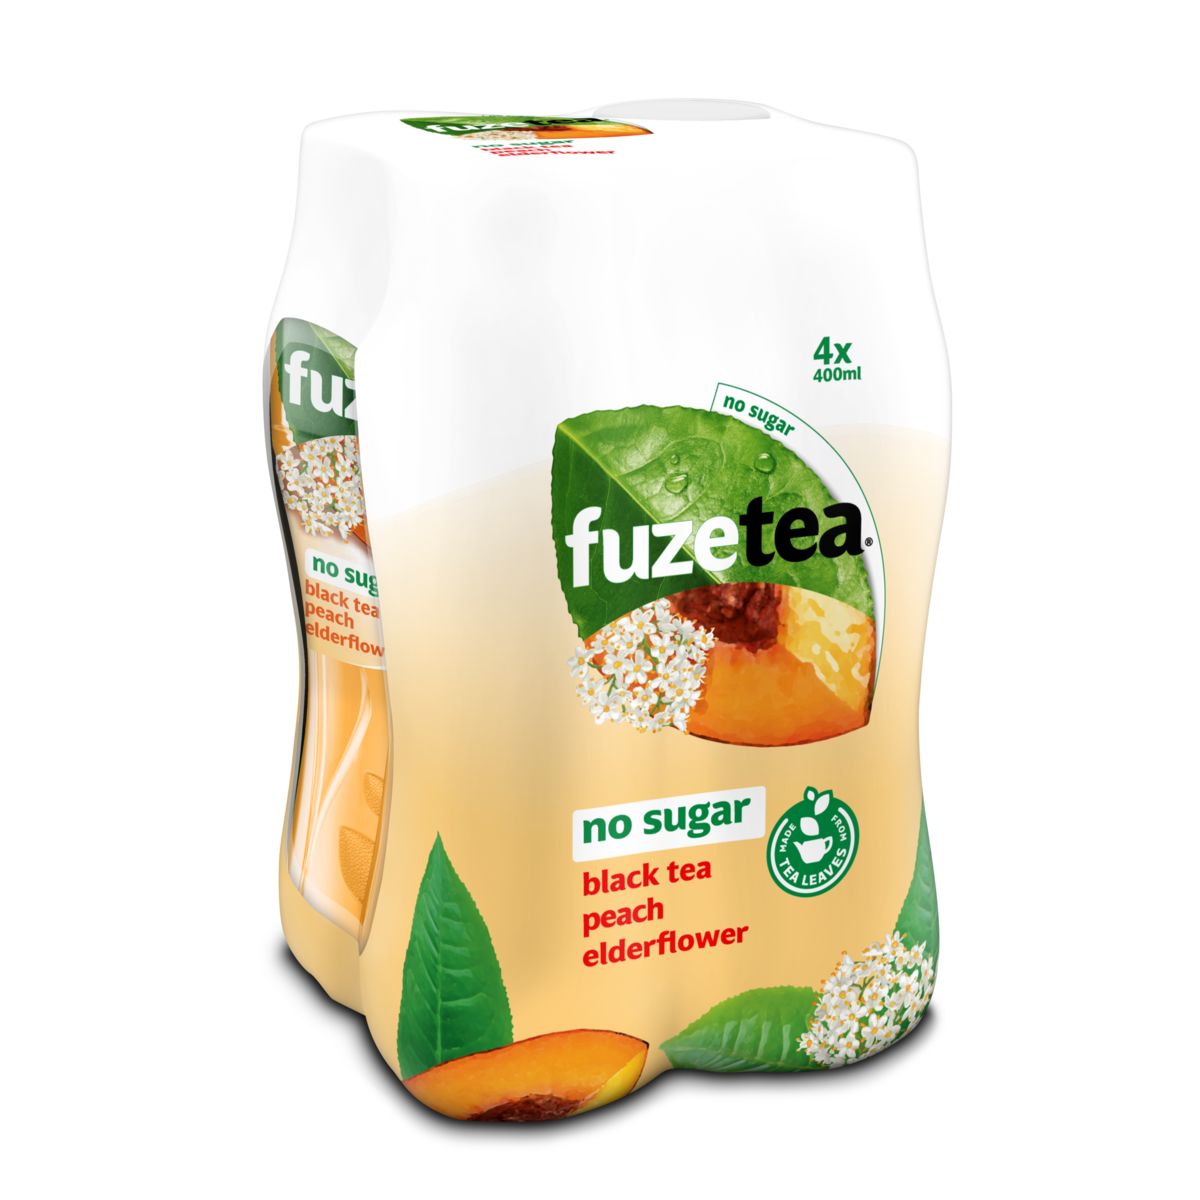 Fuze Tea Black Tea Peach Elderflower No Sugar Iced Tea 4 x 400ml